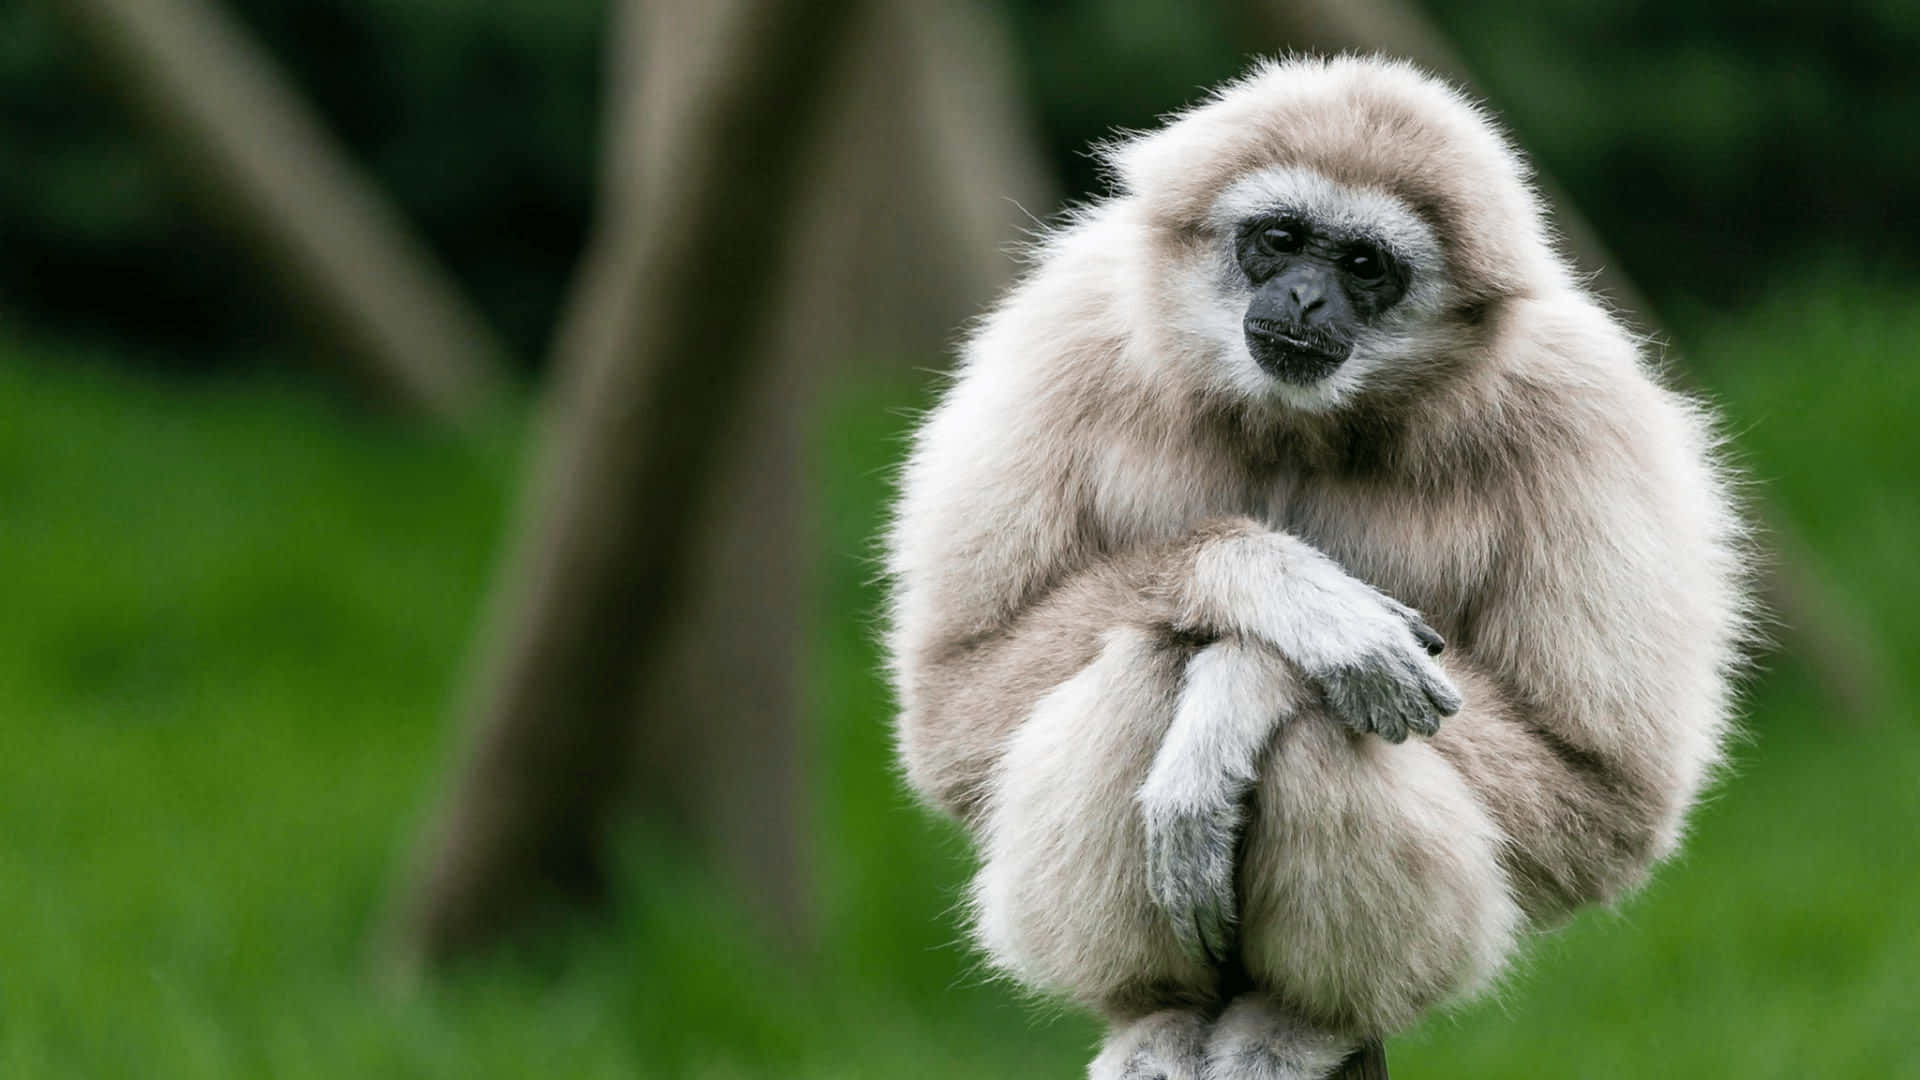 4kbakgrundsbild Med En Gibbon Med Lutat Huvud.